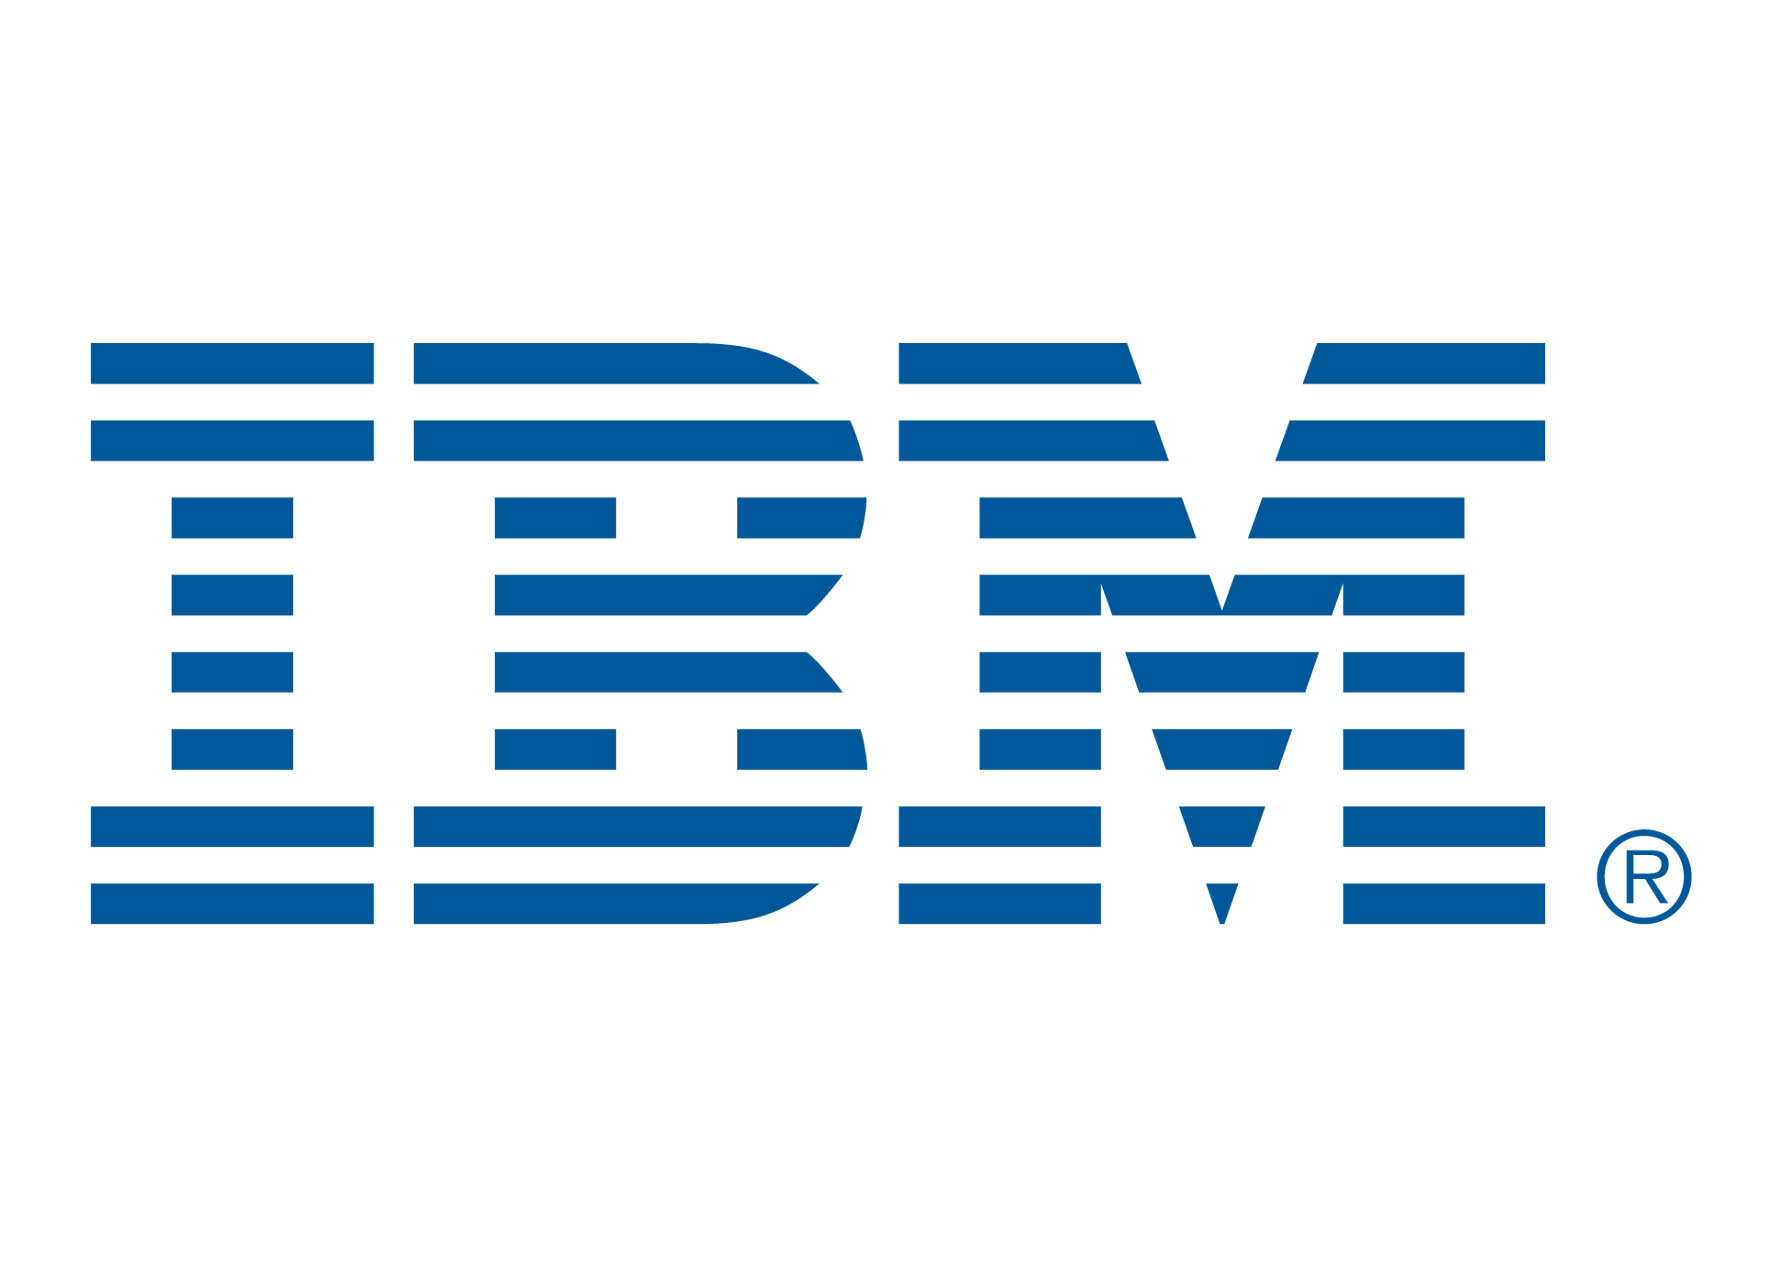 ibm-logo-3